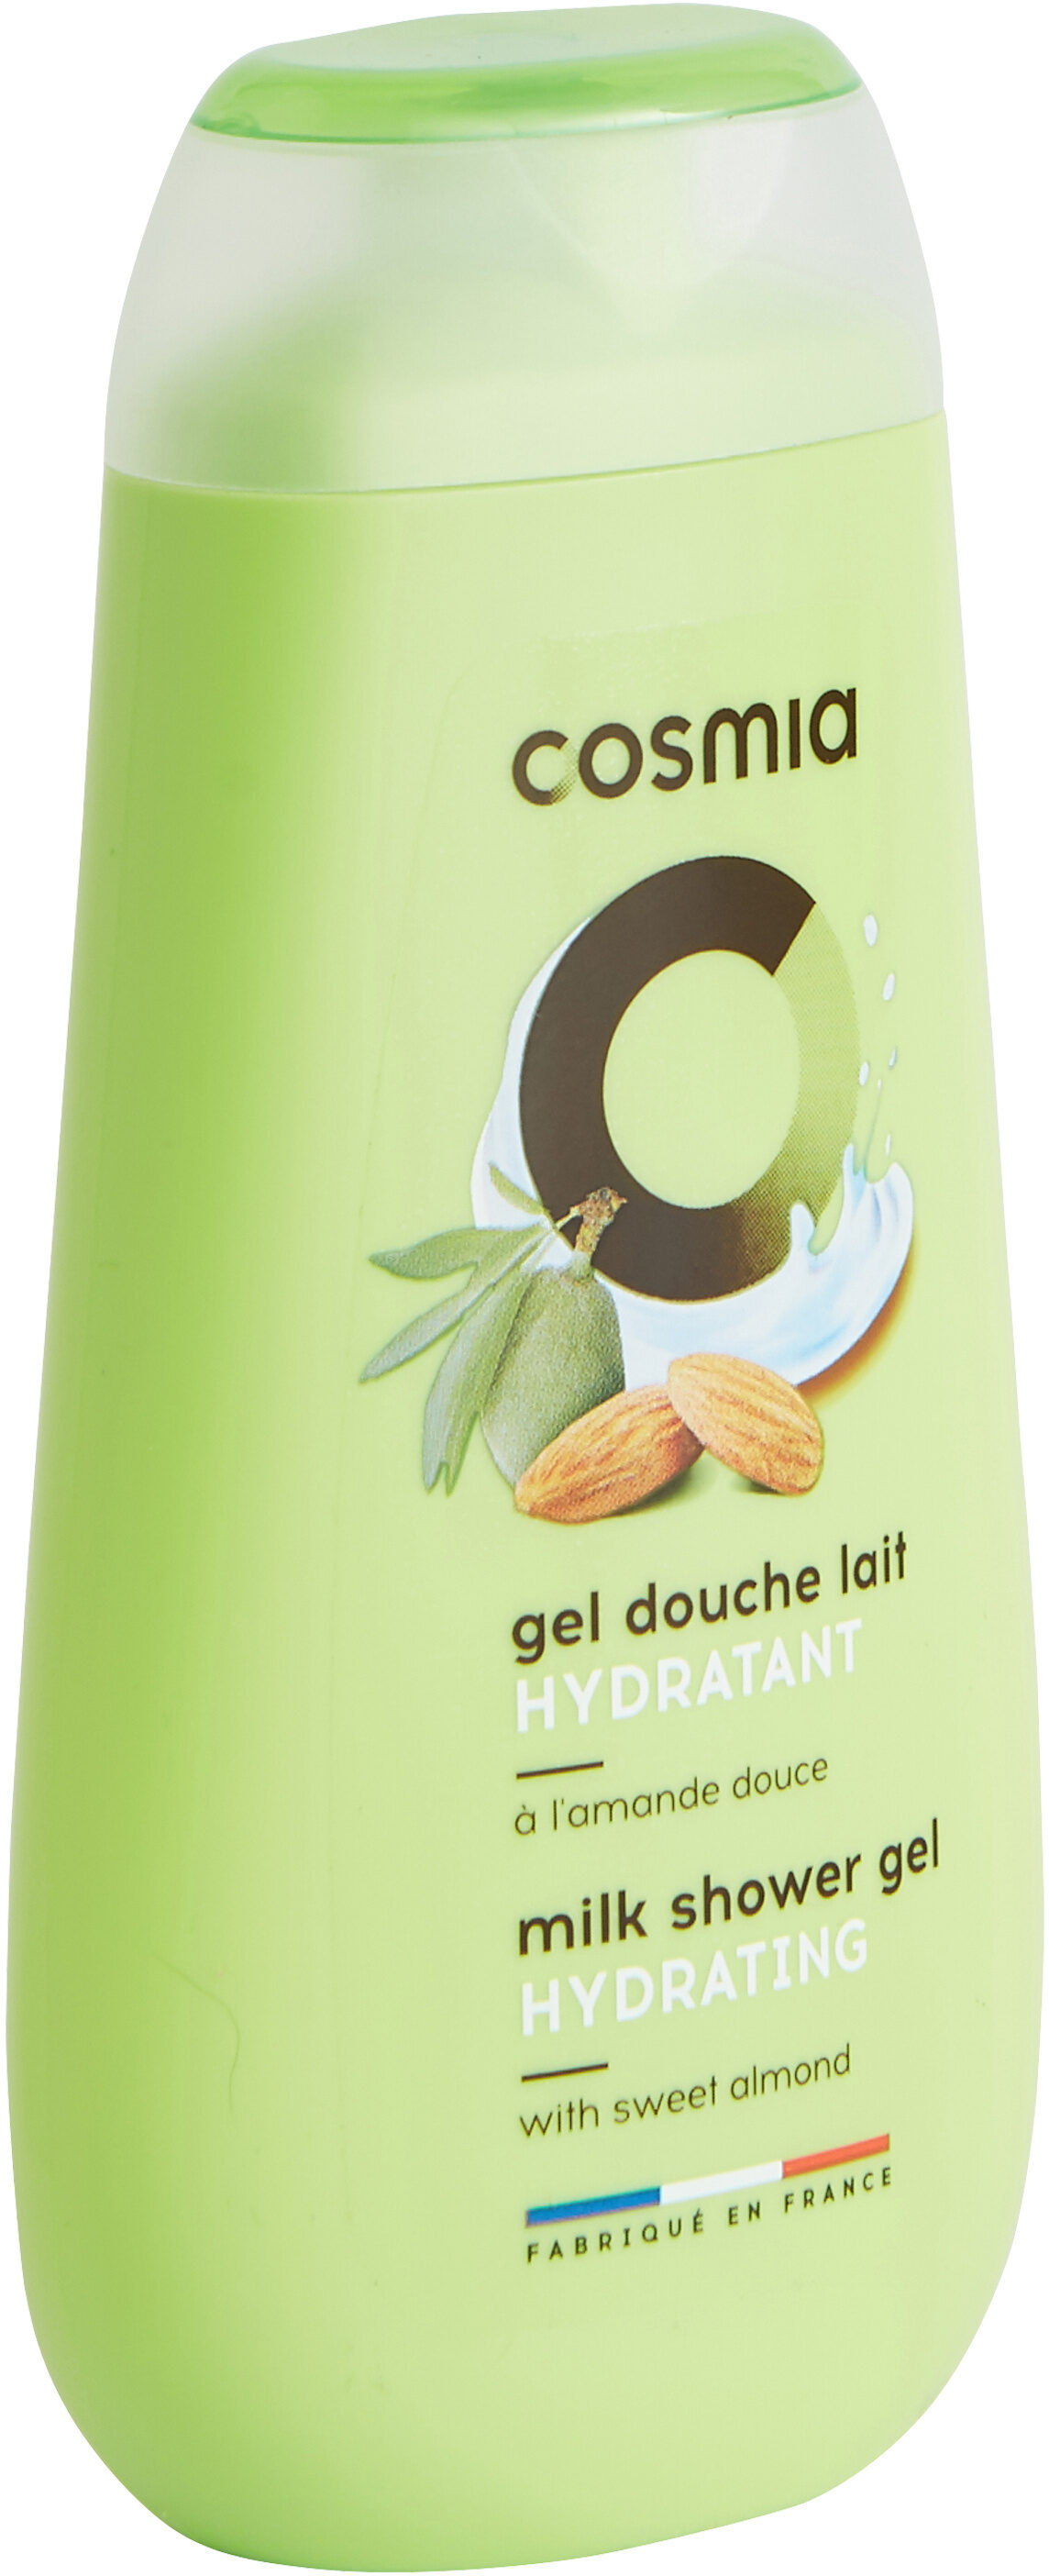 Cosmia gel douche lait hydratant a l'amande douce - Produkt - fr